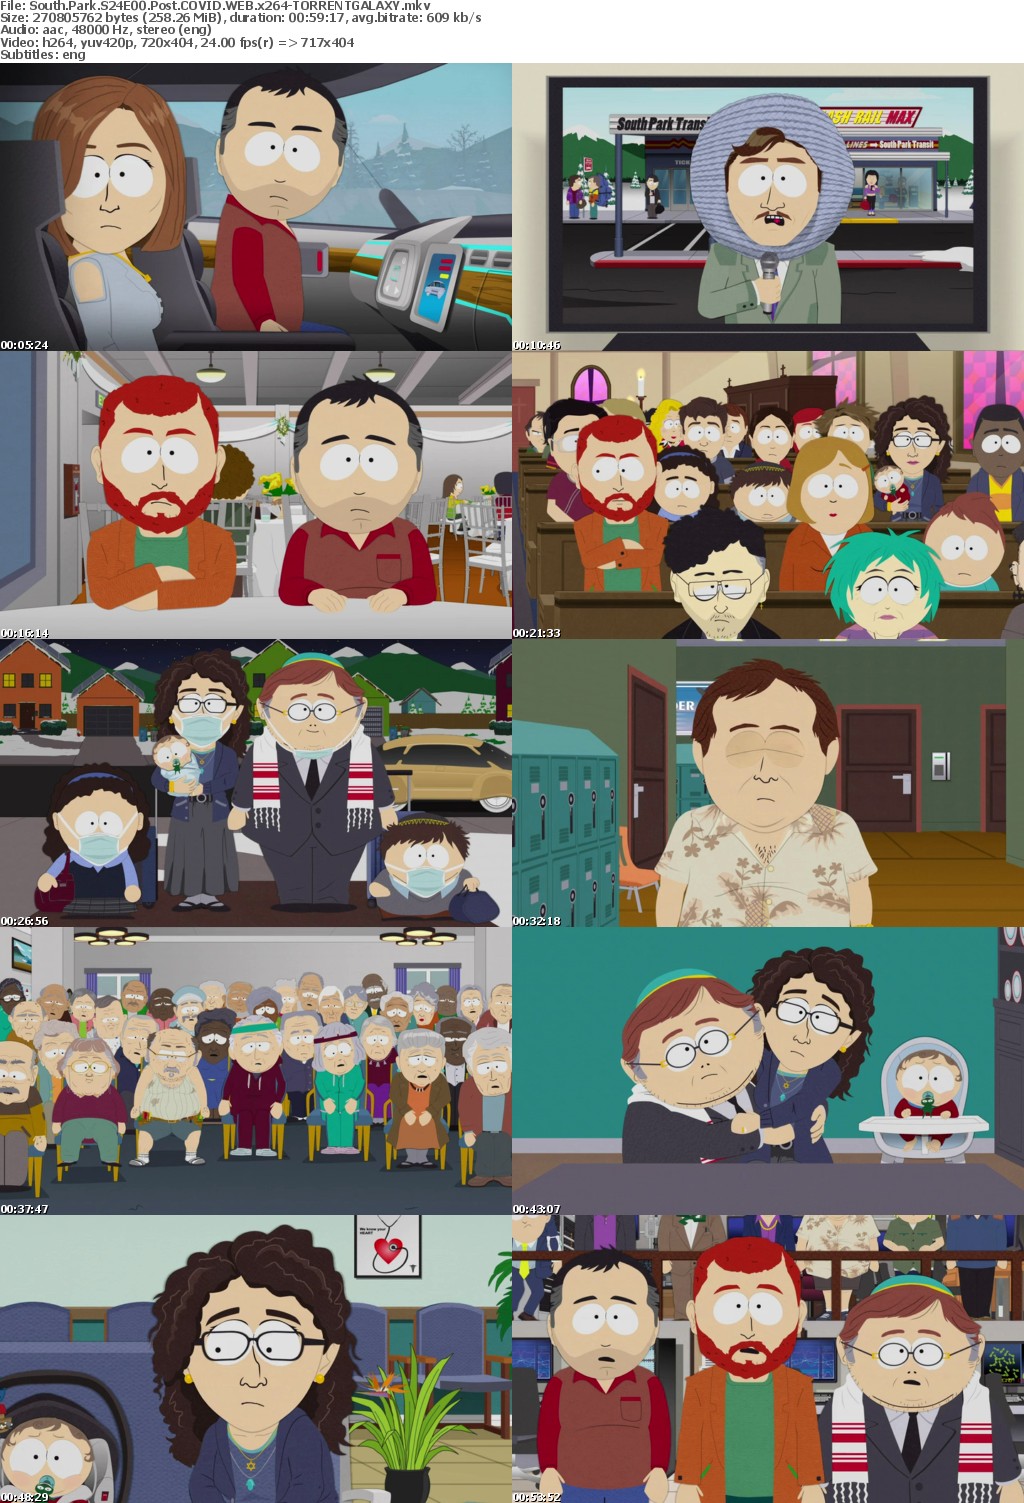 South Park S24E00 Post COVID WEB x264-GALAXY